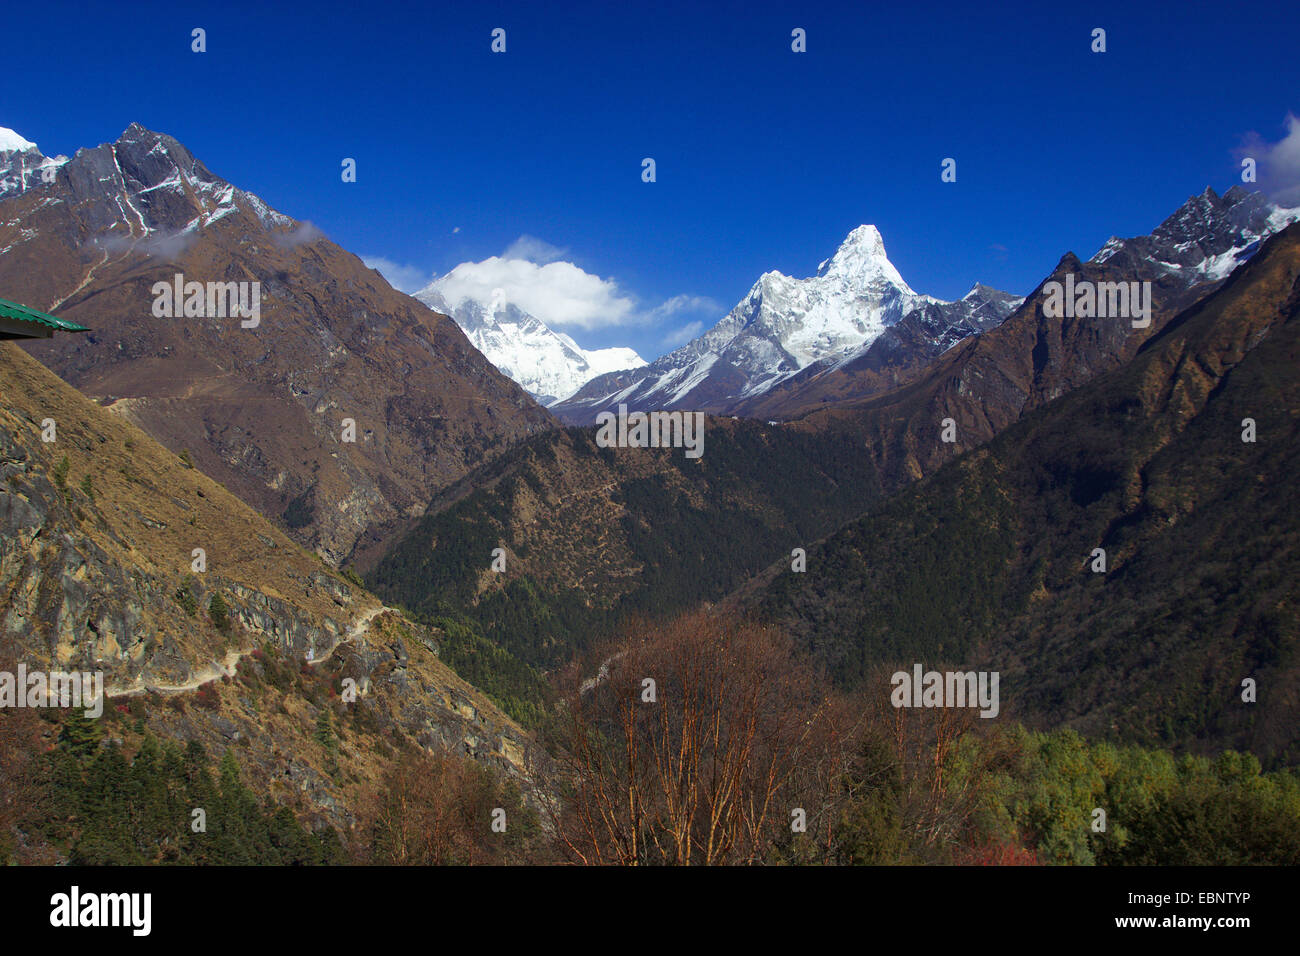 Lhotse, Ama Dablam. View from Sanasa, Nepal, Himalaya, Khumbu Himal Stock Photo